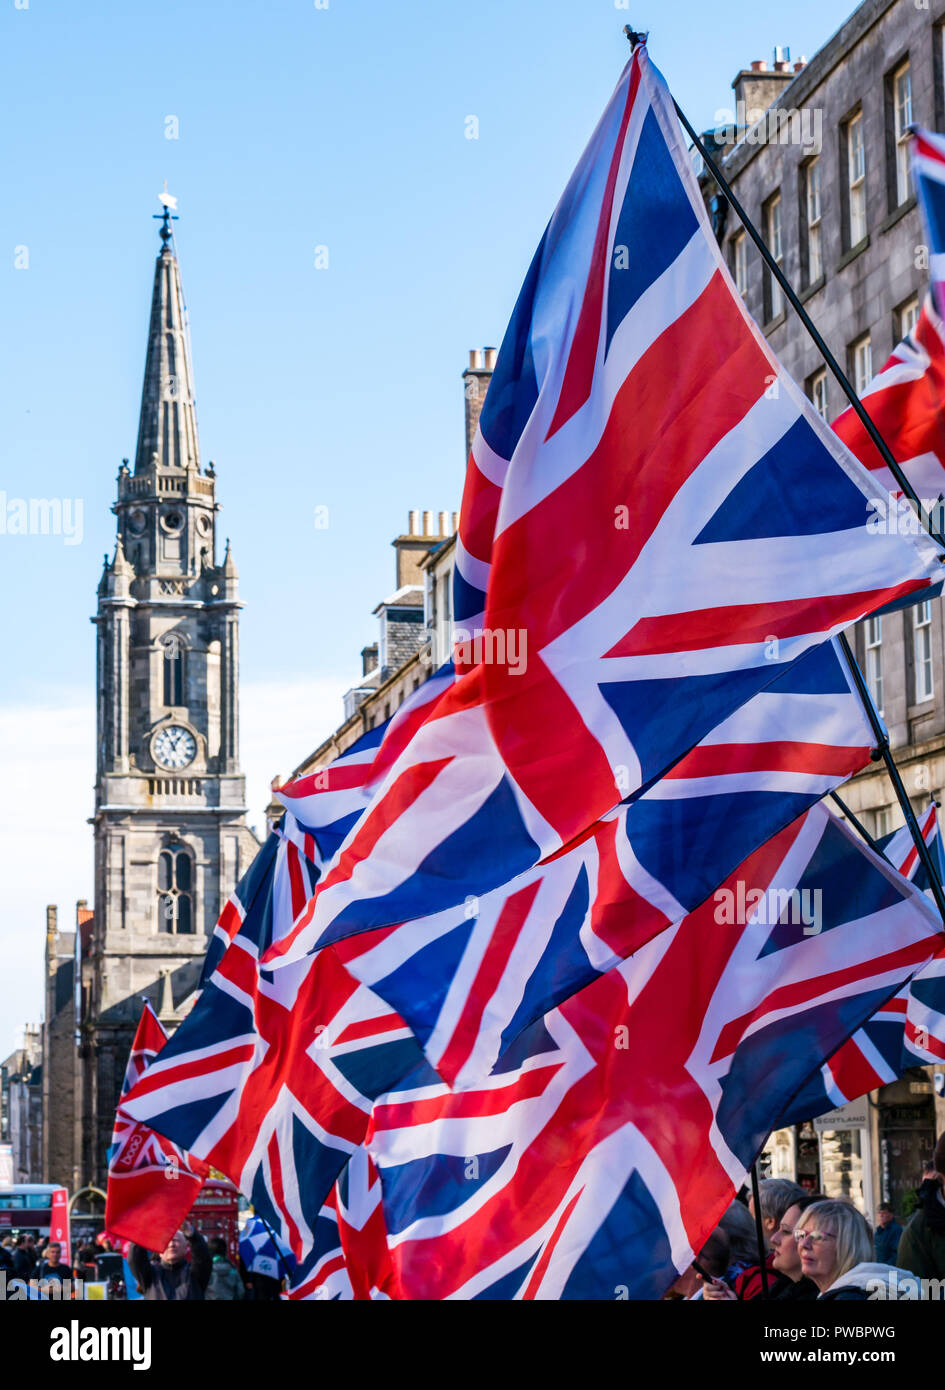 Union Jack drapeaux flottant avec Tron Kirk réveil spire, l'indépendance écossaise tous sous une même bannière mars 2108 AUOB, Royal Mile, Édimbourg, Écosse, Royaume-Uni Banque D'Images